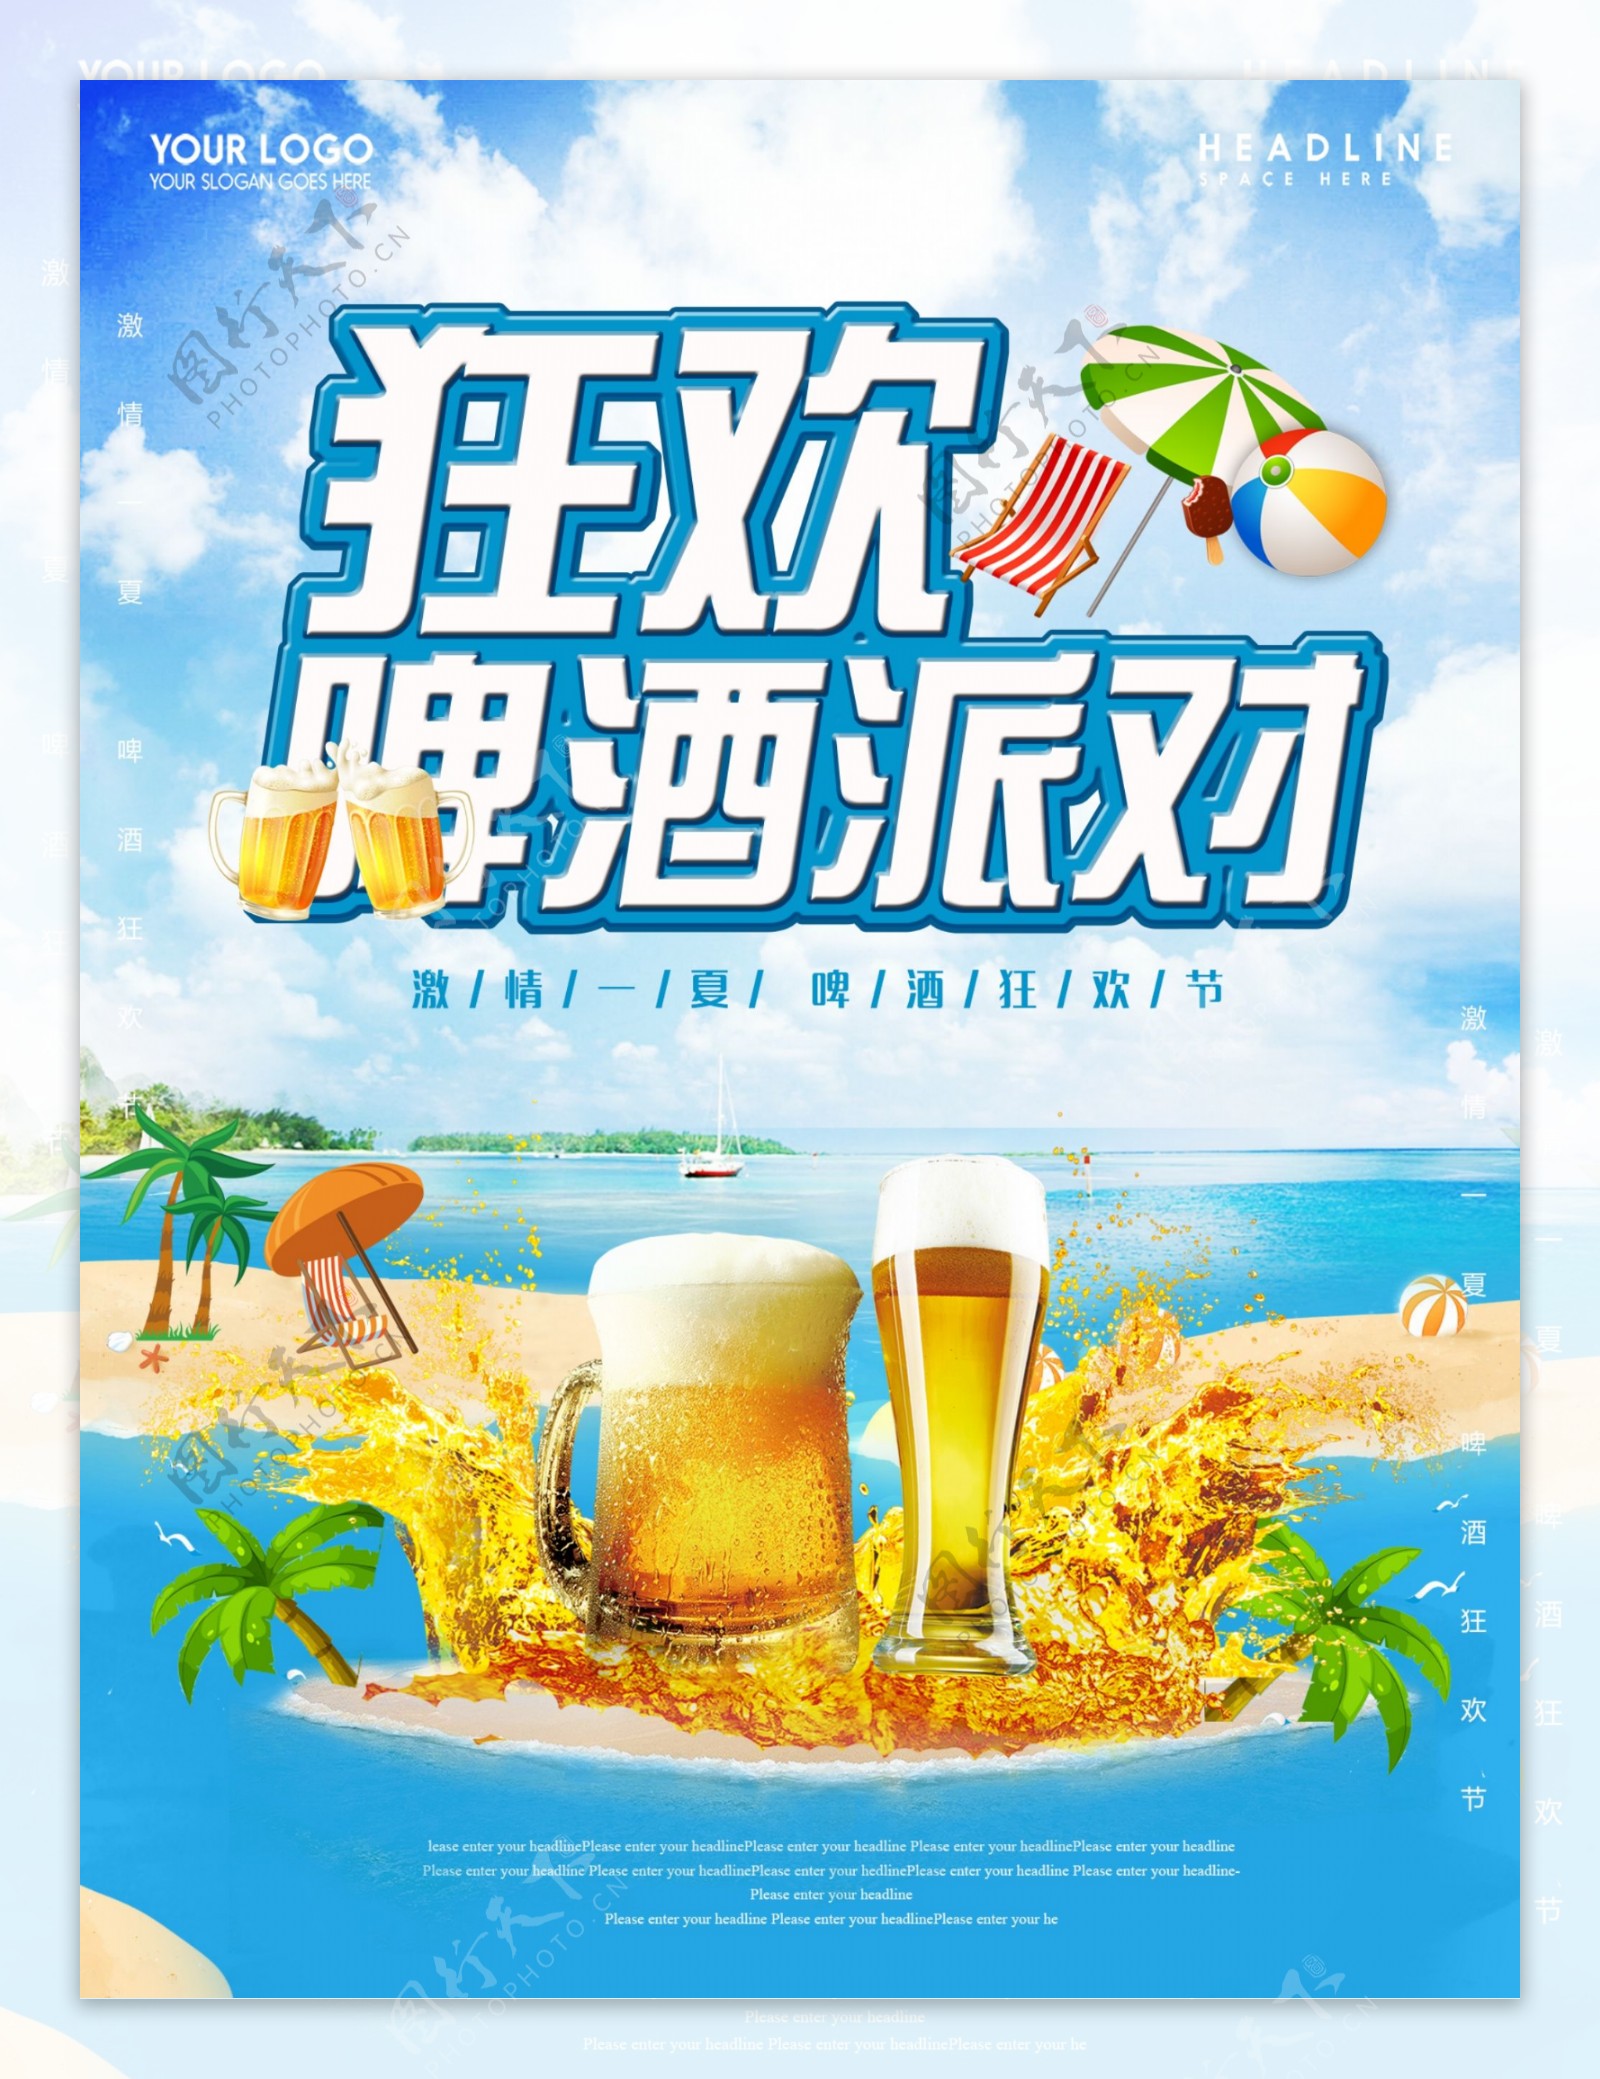 狂欢啤酒派对夏日清凉冰爽蓝天图